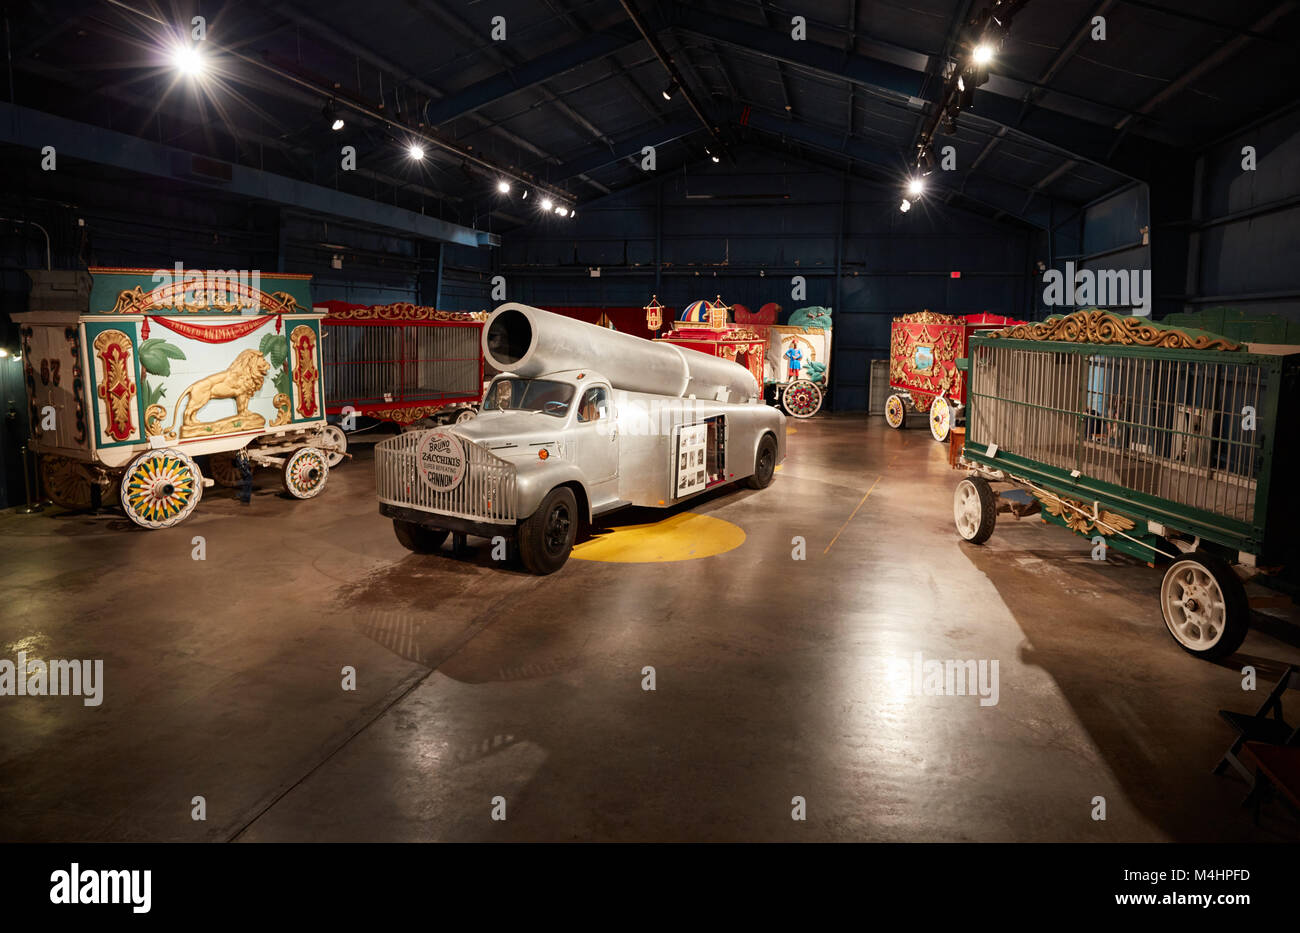 Circus wagons at the Ringling Museum, Sarasota, Florida Stock Photo